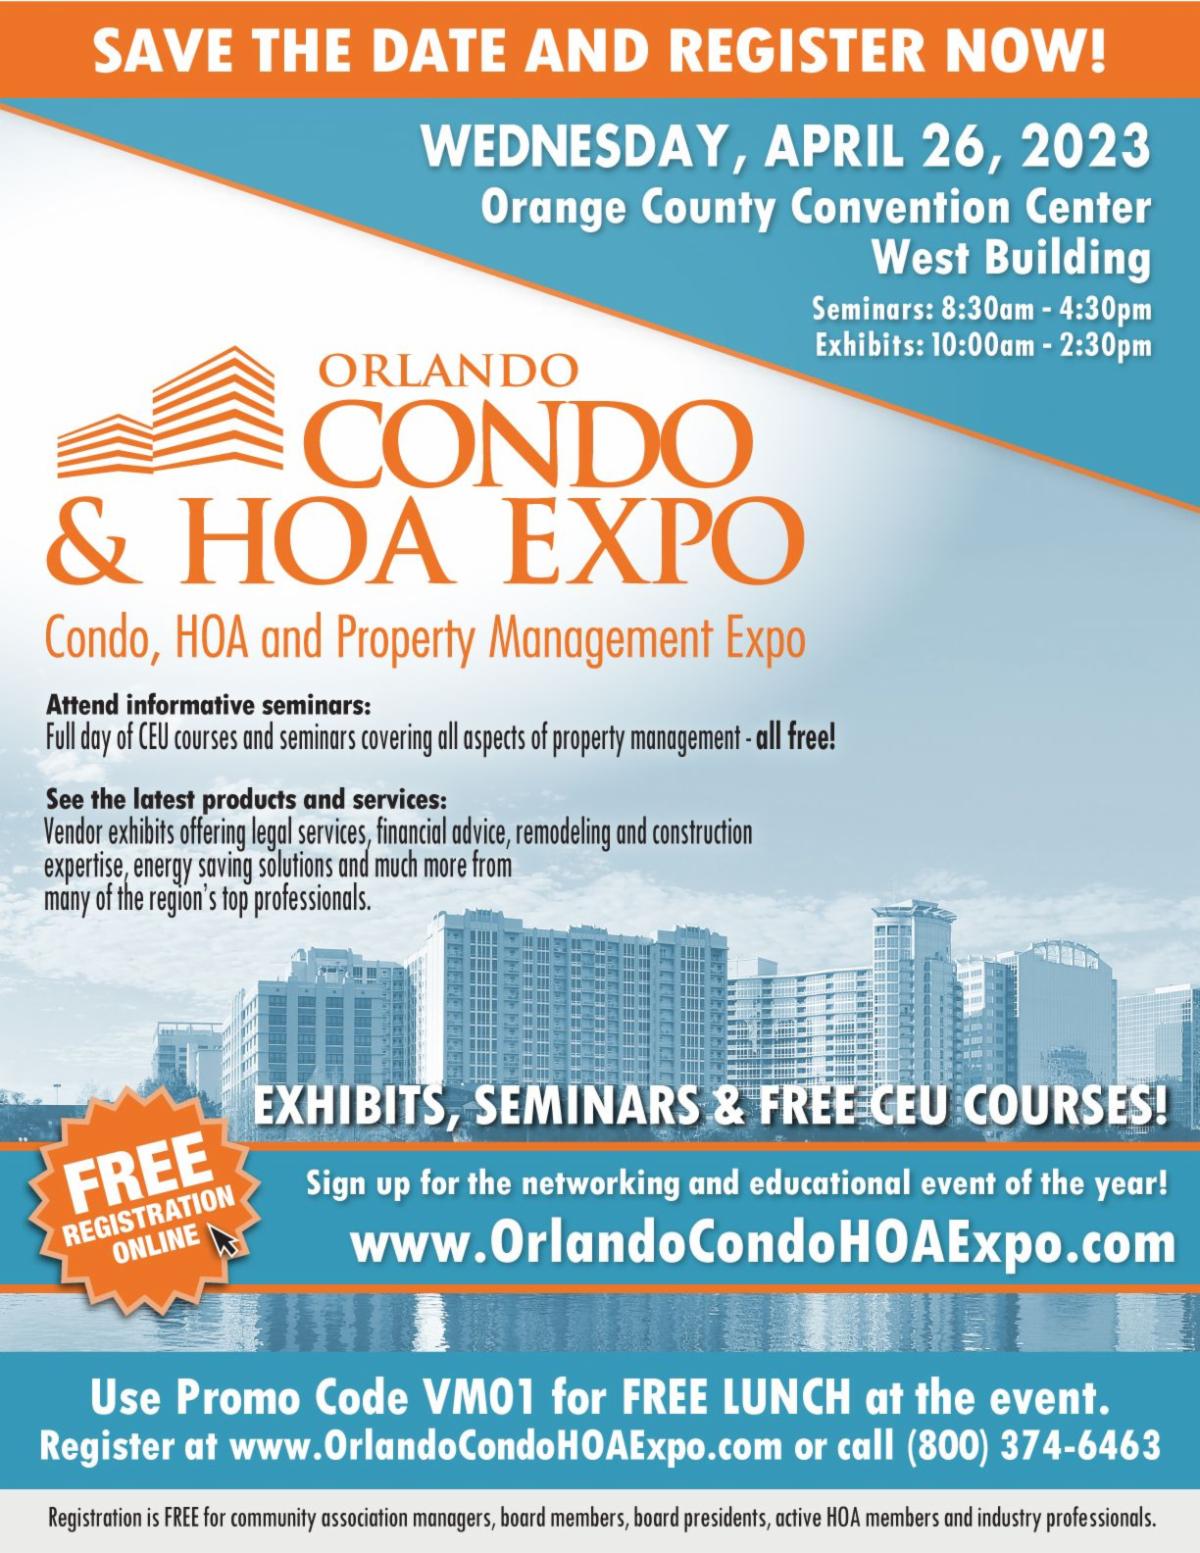 Orlando Condo and HOA Expo. APRIL 26TH, 2023 AT THE ORLANDO CONVENTION